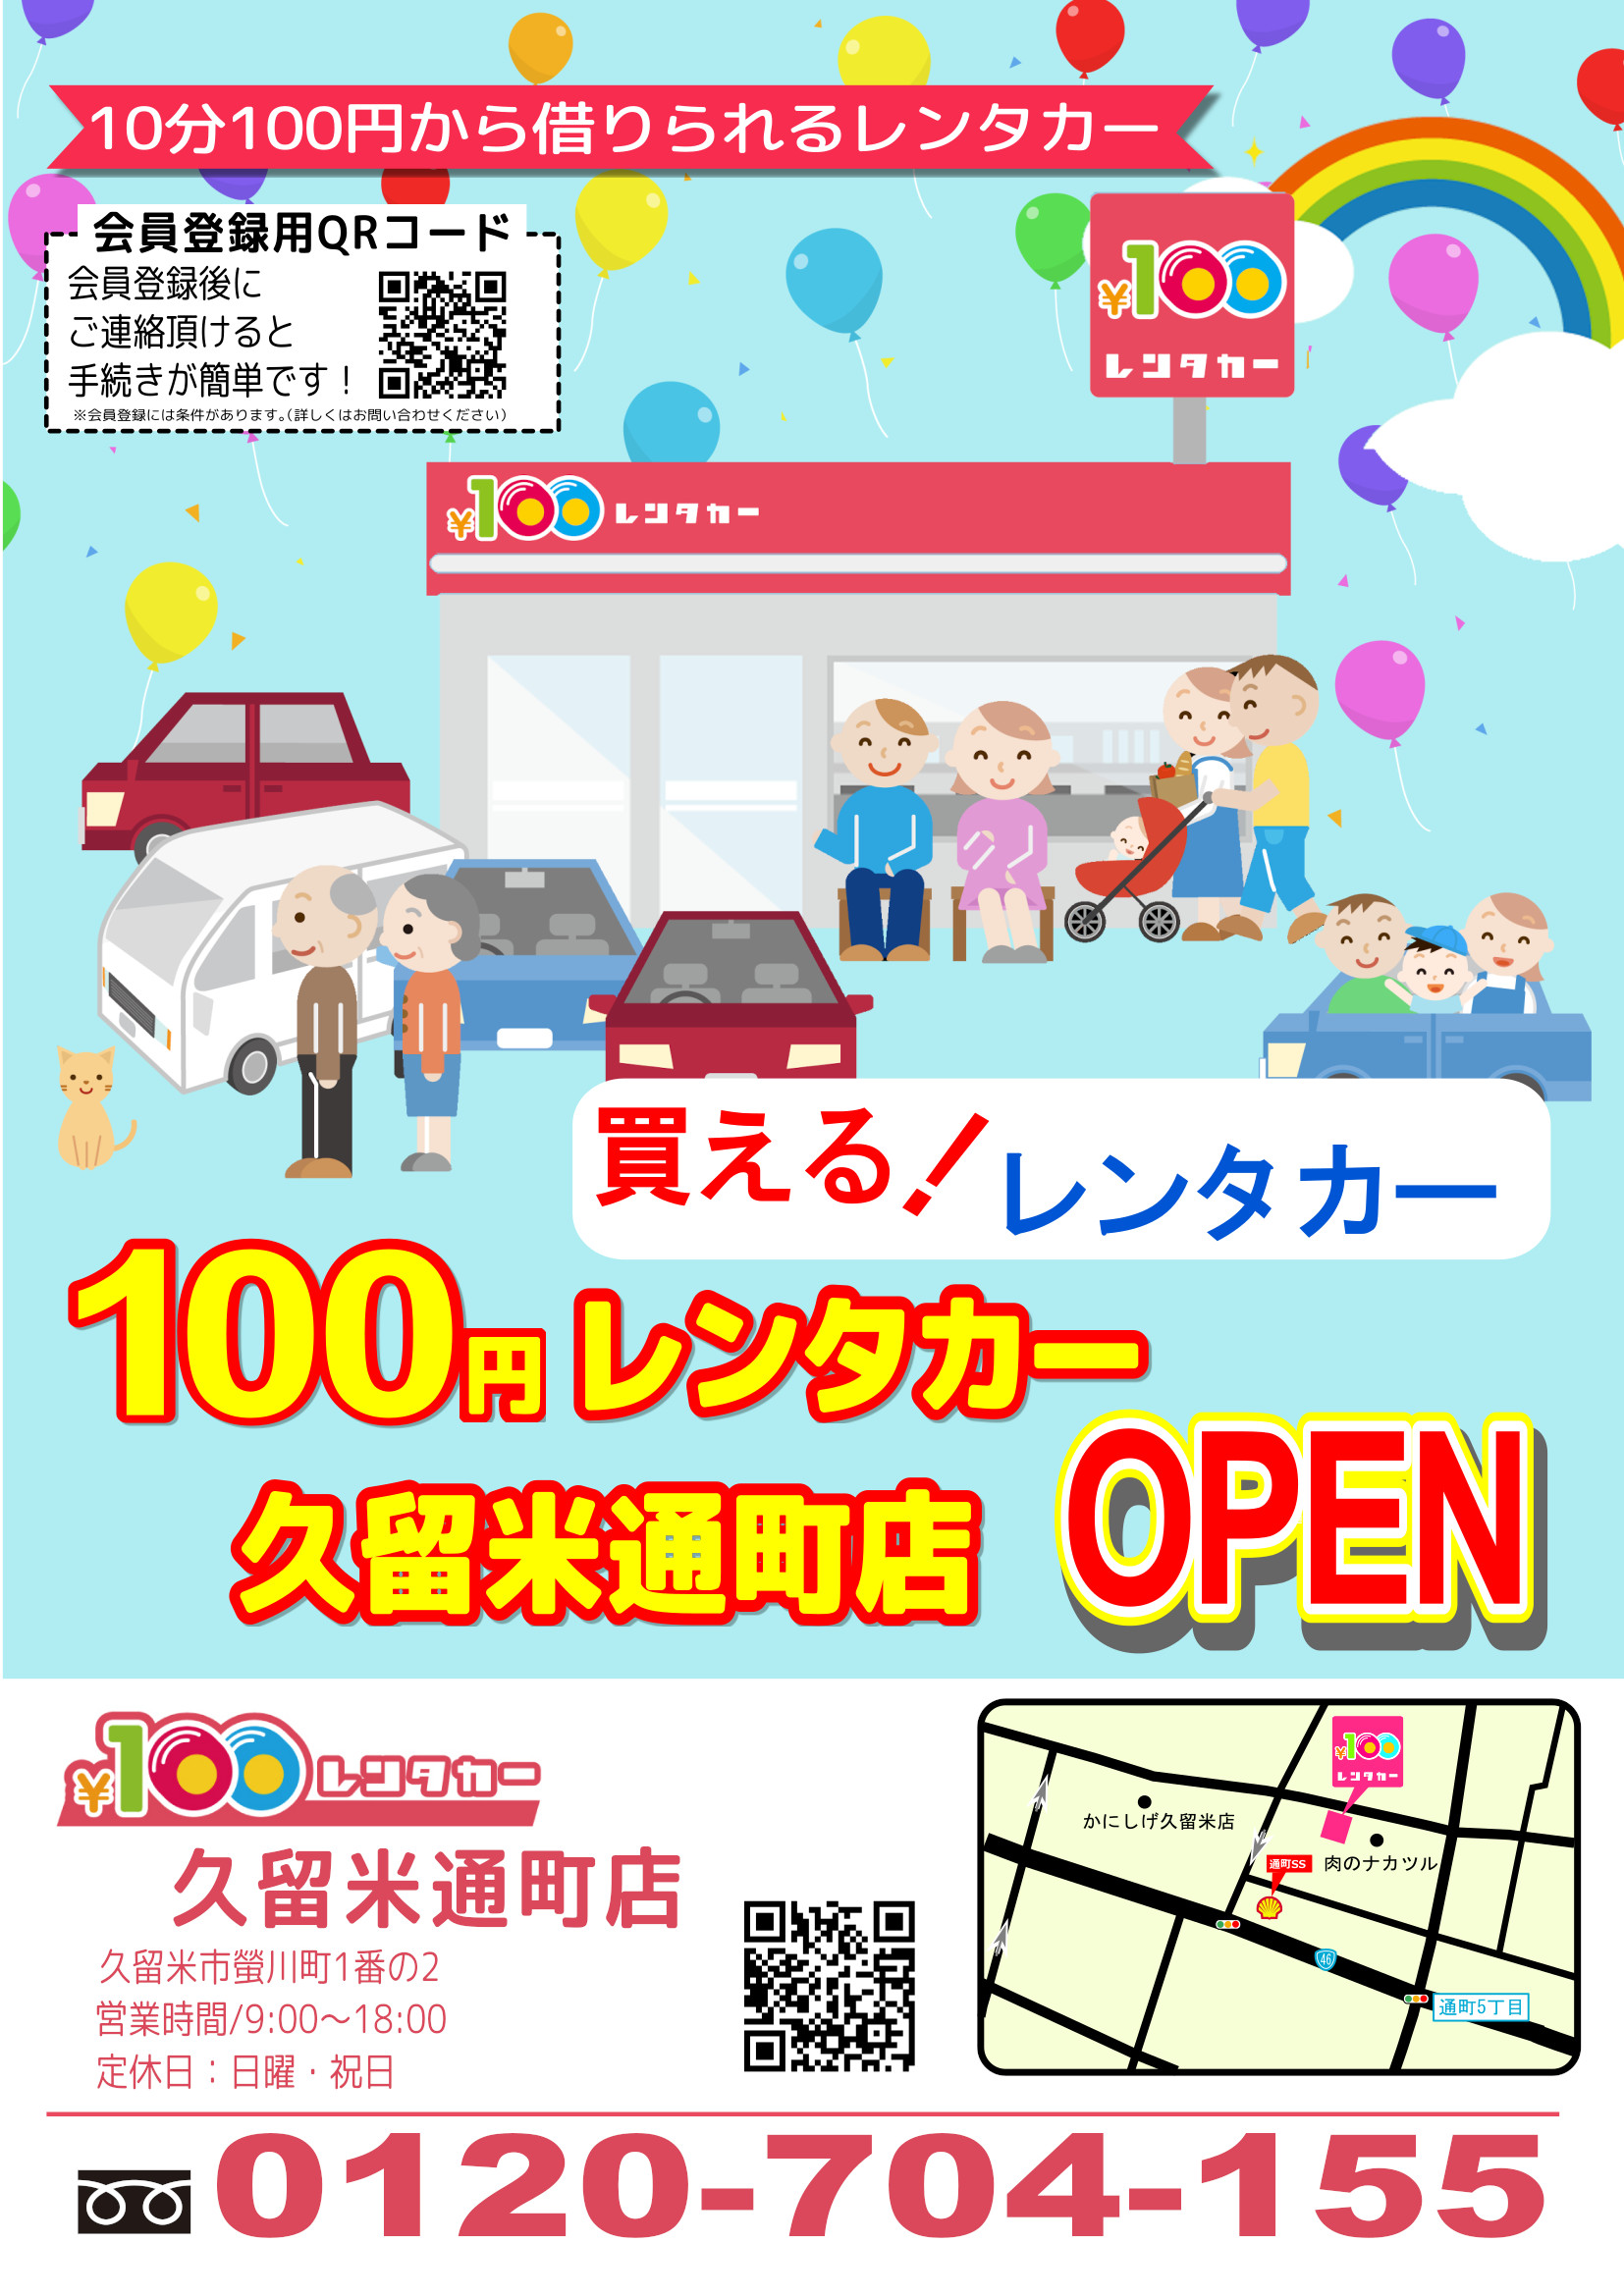 100円レンタカー久留米通町店オープン | お知らせ | 最所産業株式会社